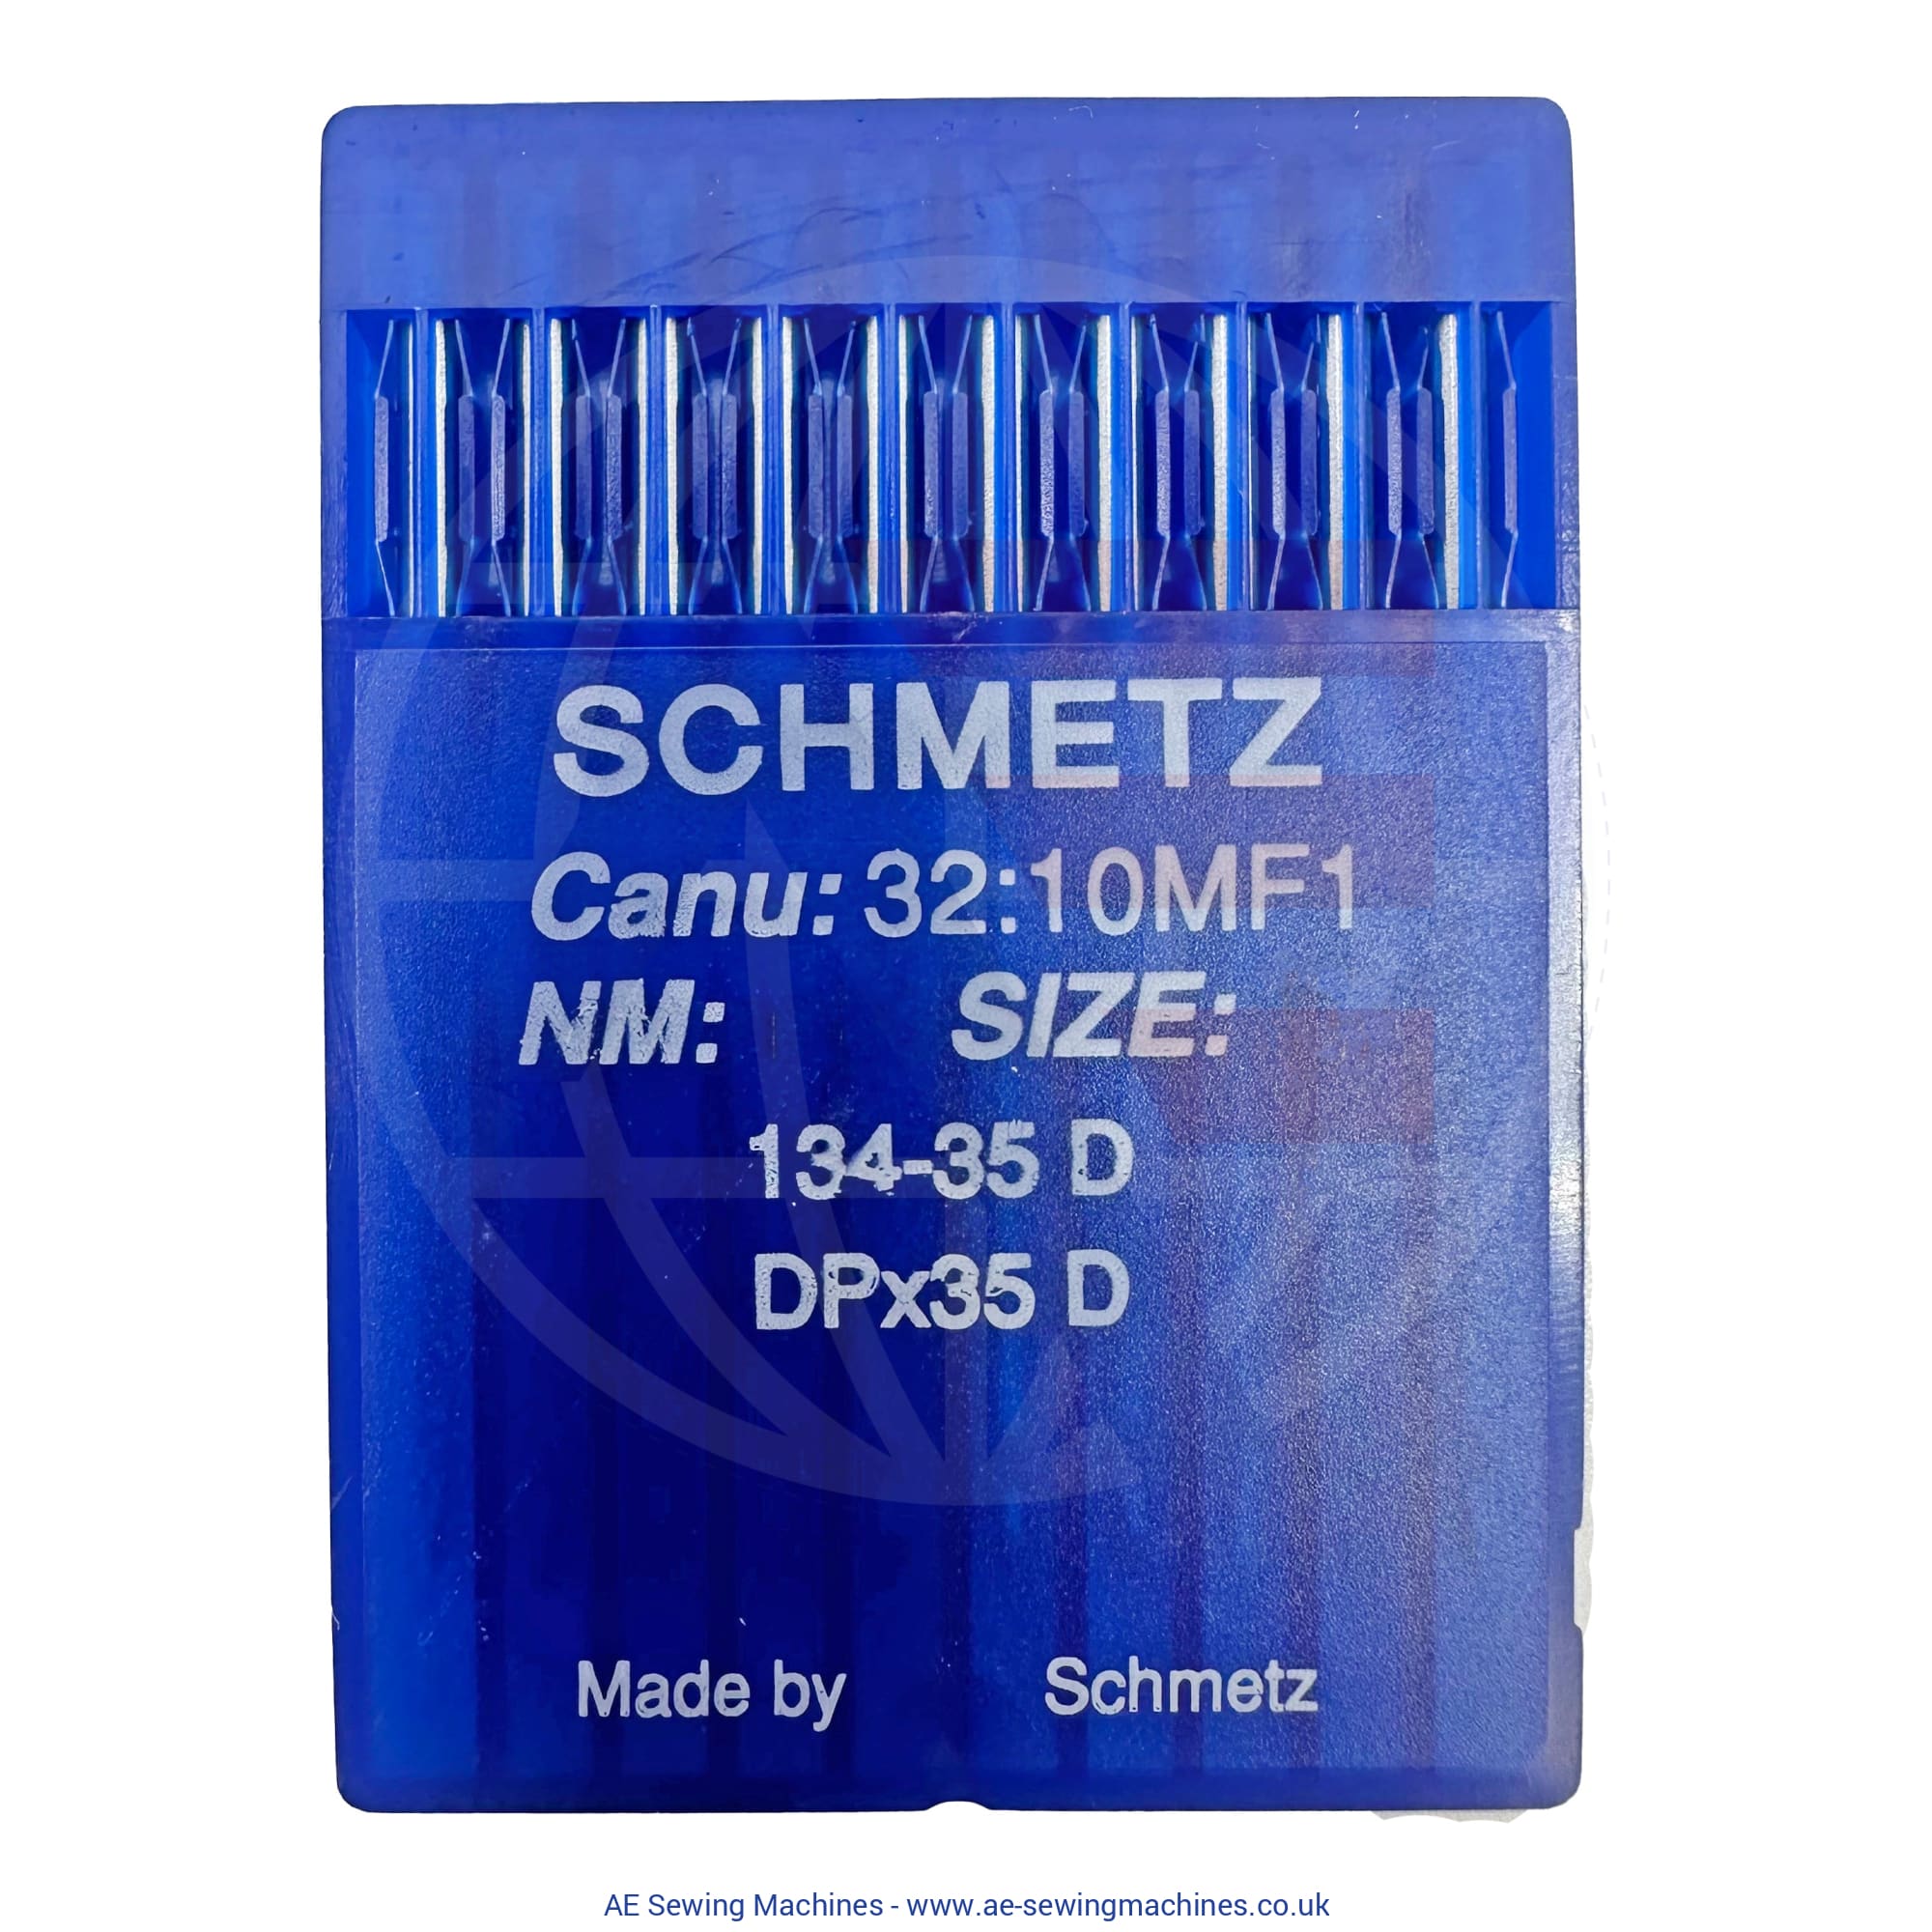 Schmetz 134-35D Triangular Point Needles Sewing Machine